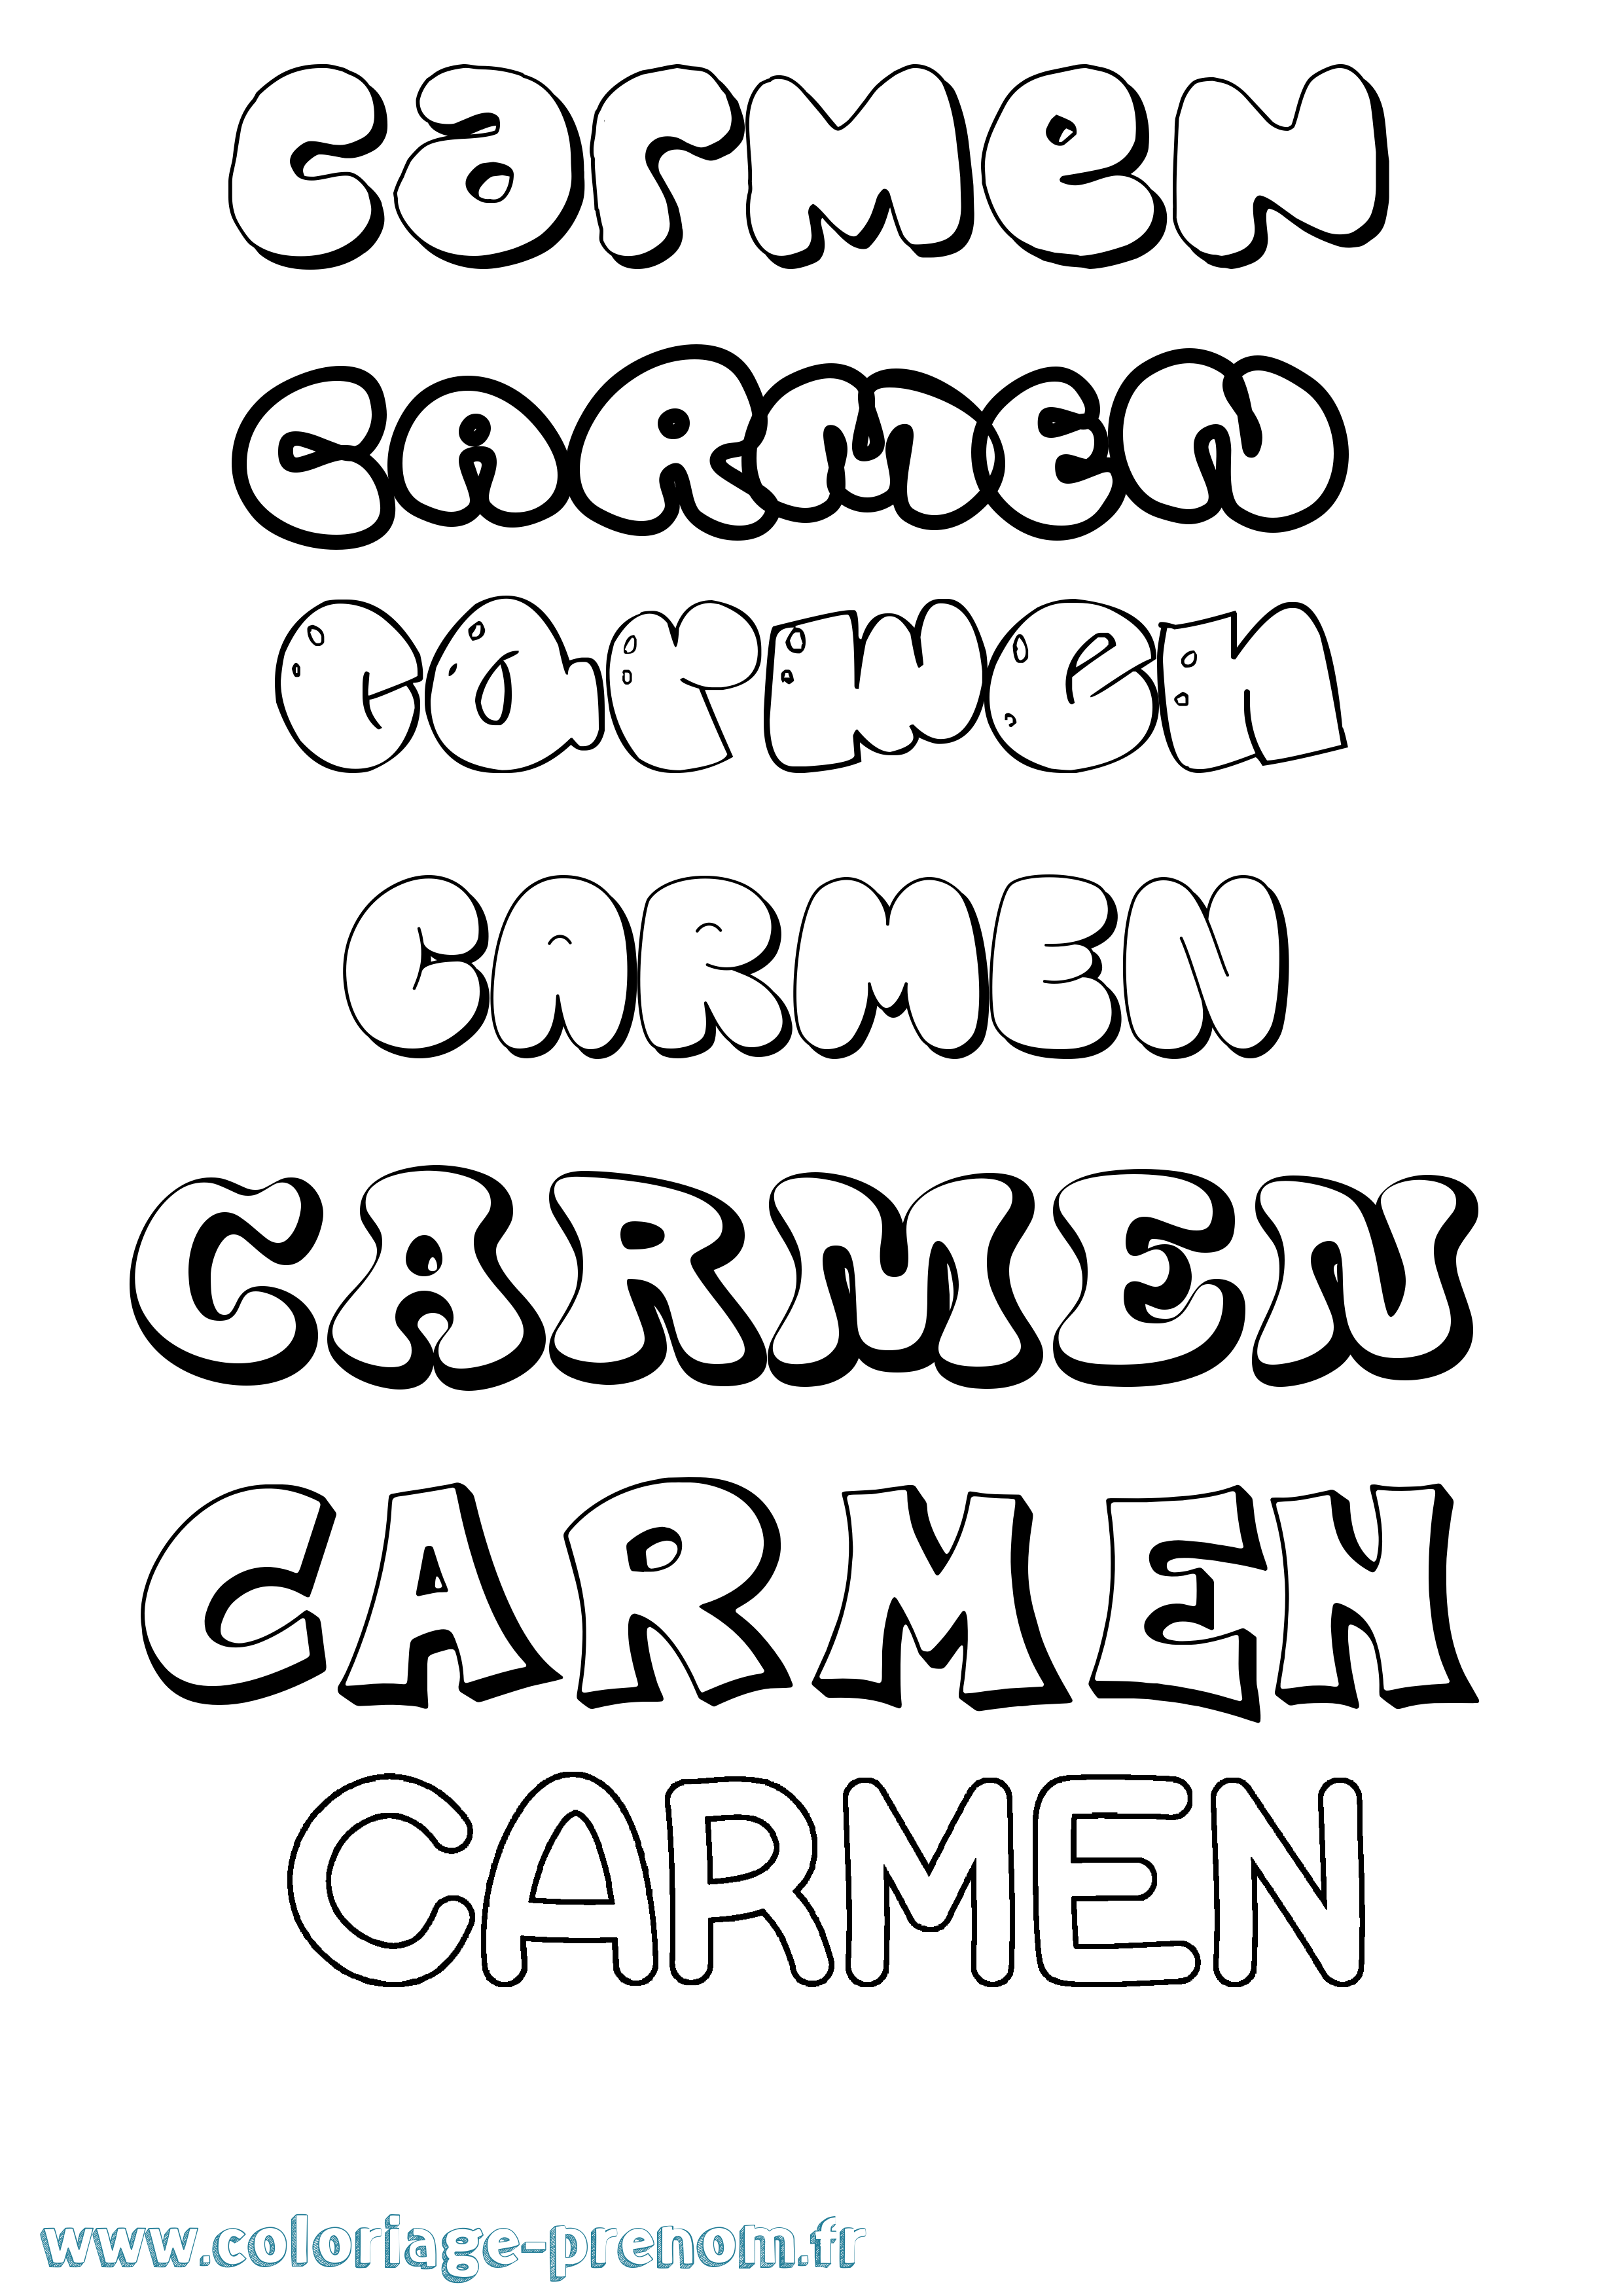 Coloriage prénom Carmen Bubble